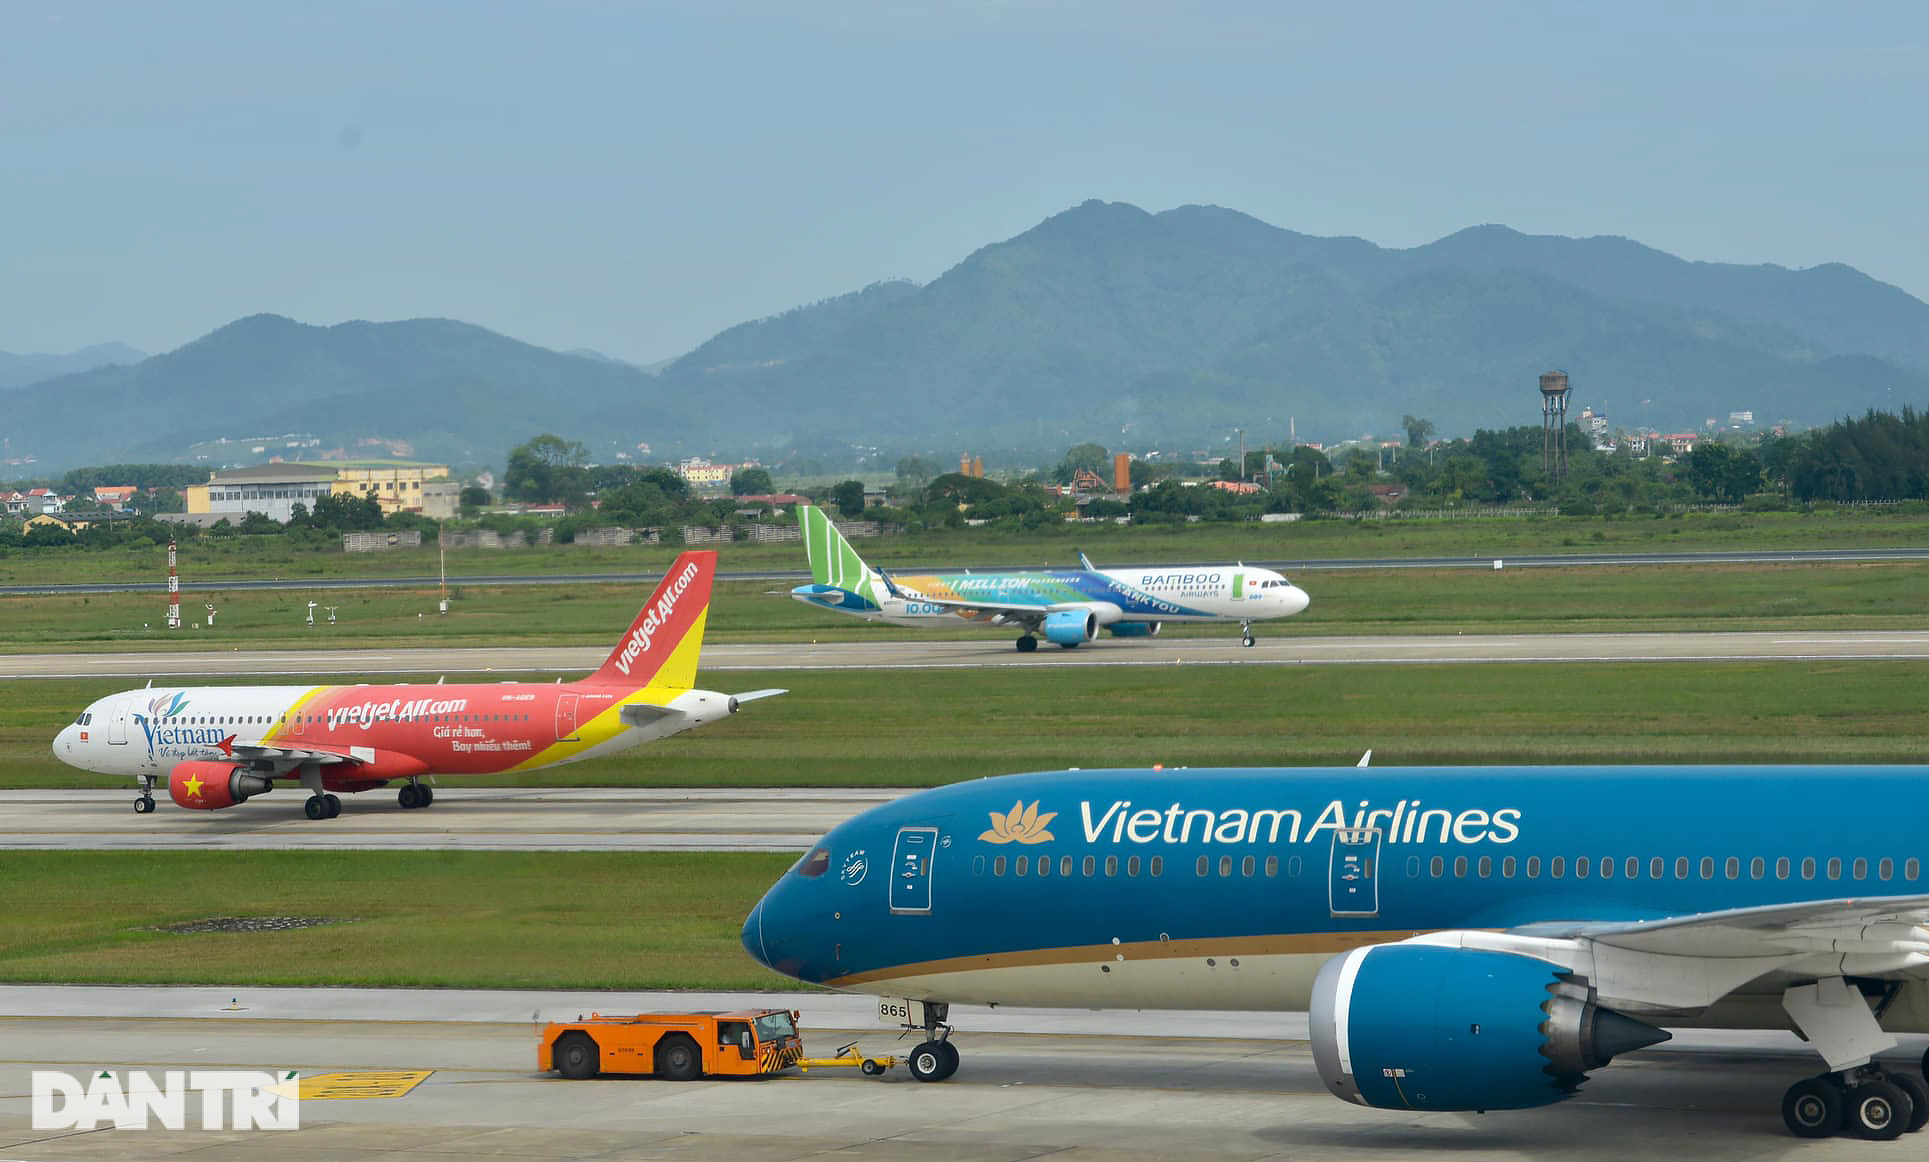 Đã có 4 sân bay quân sự, Bình Phước lại muốn có thêm 1 sân bay dân dụng